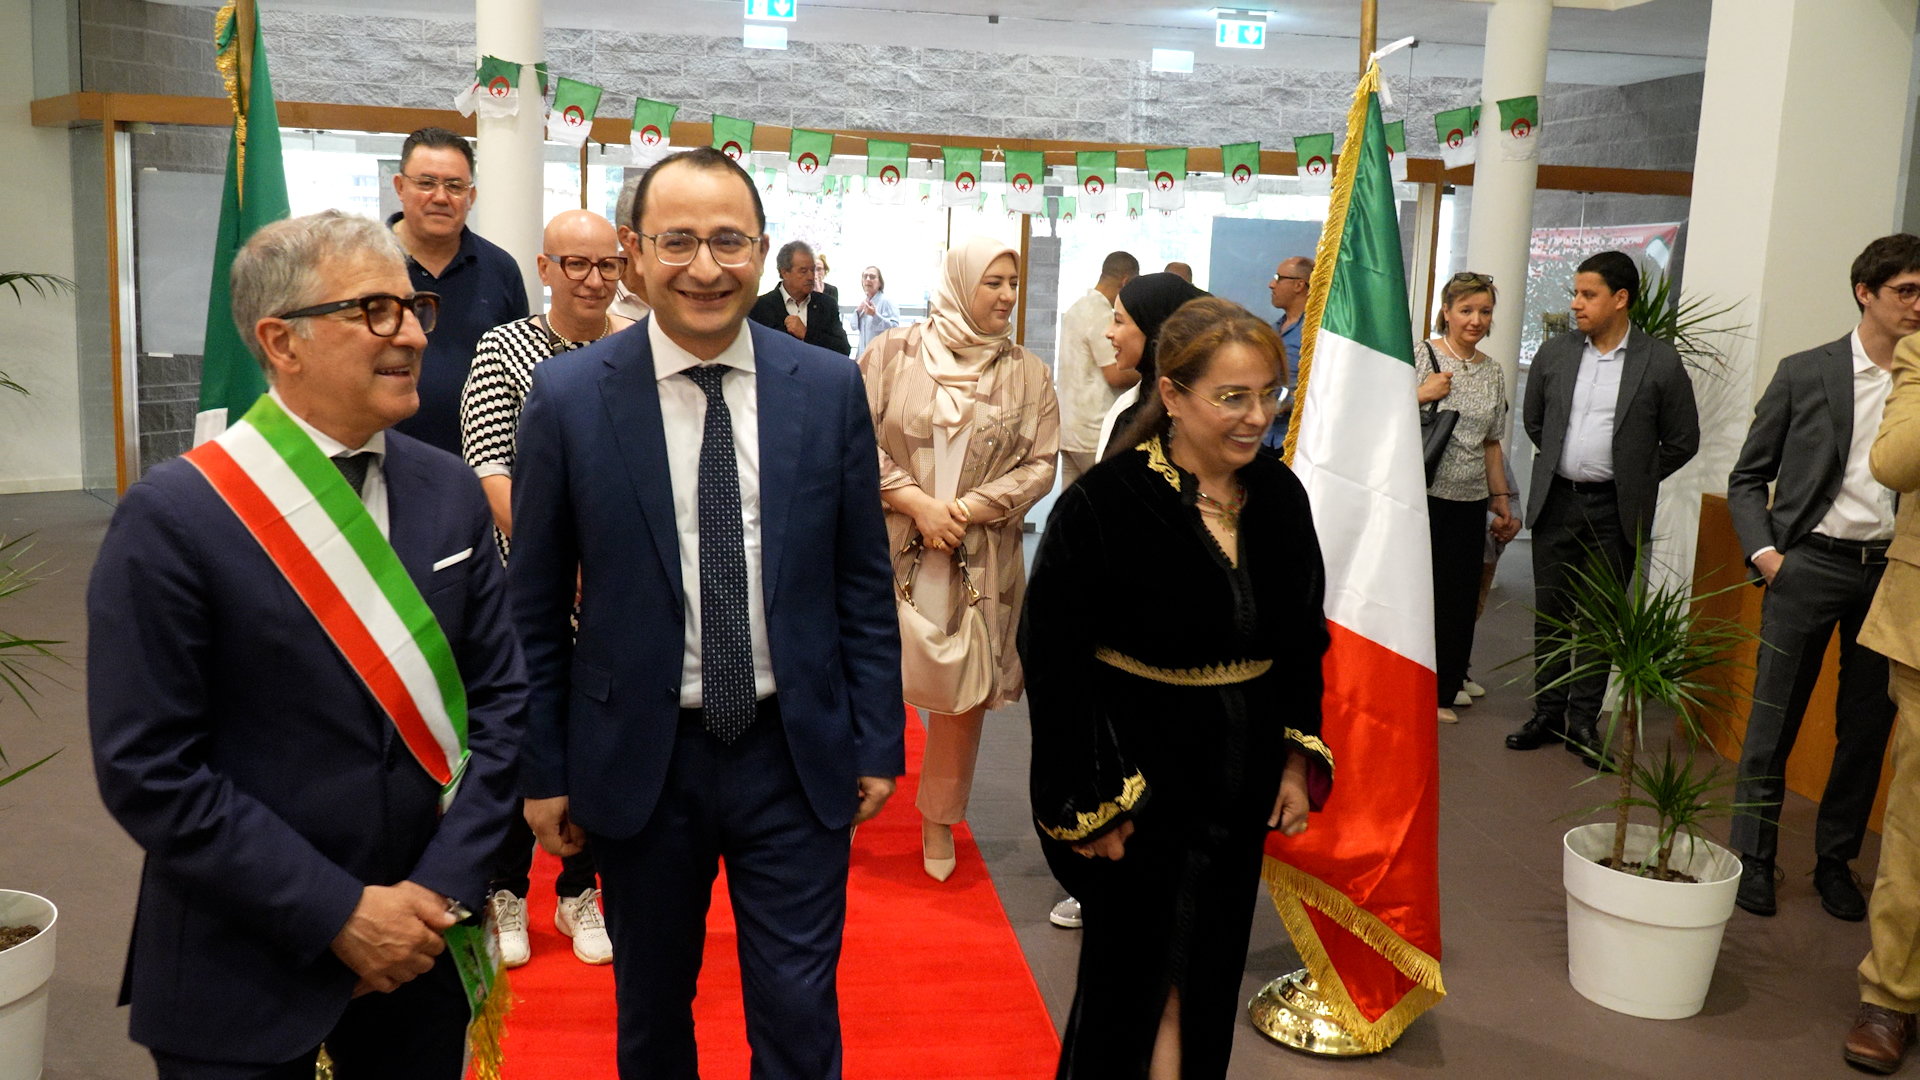 L'amicizia tra Algeria e Italia parte da Boario